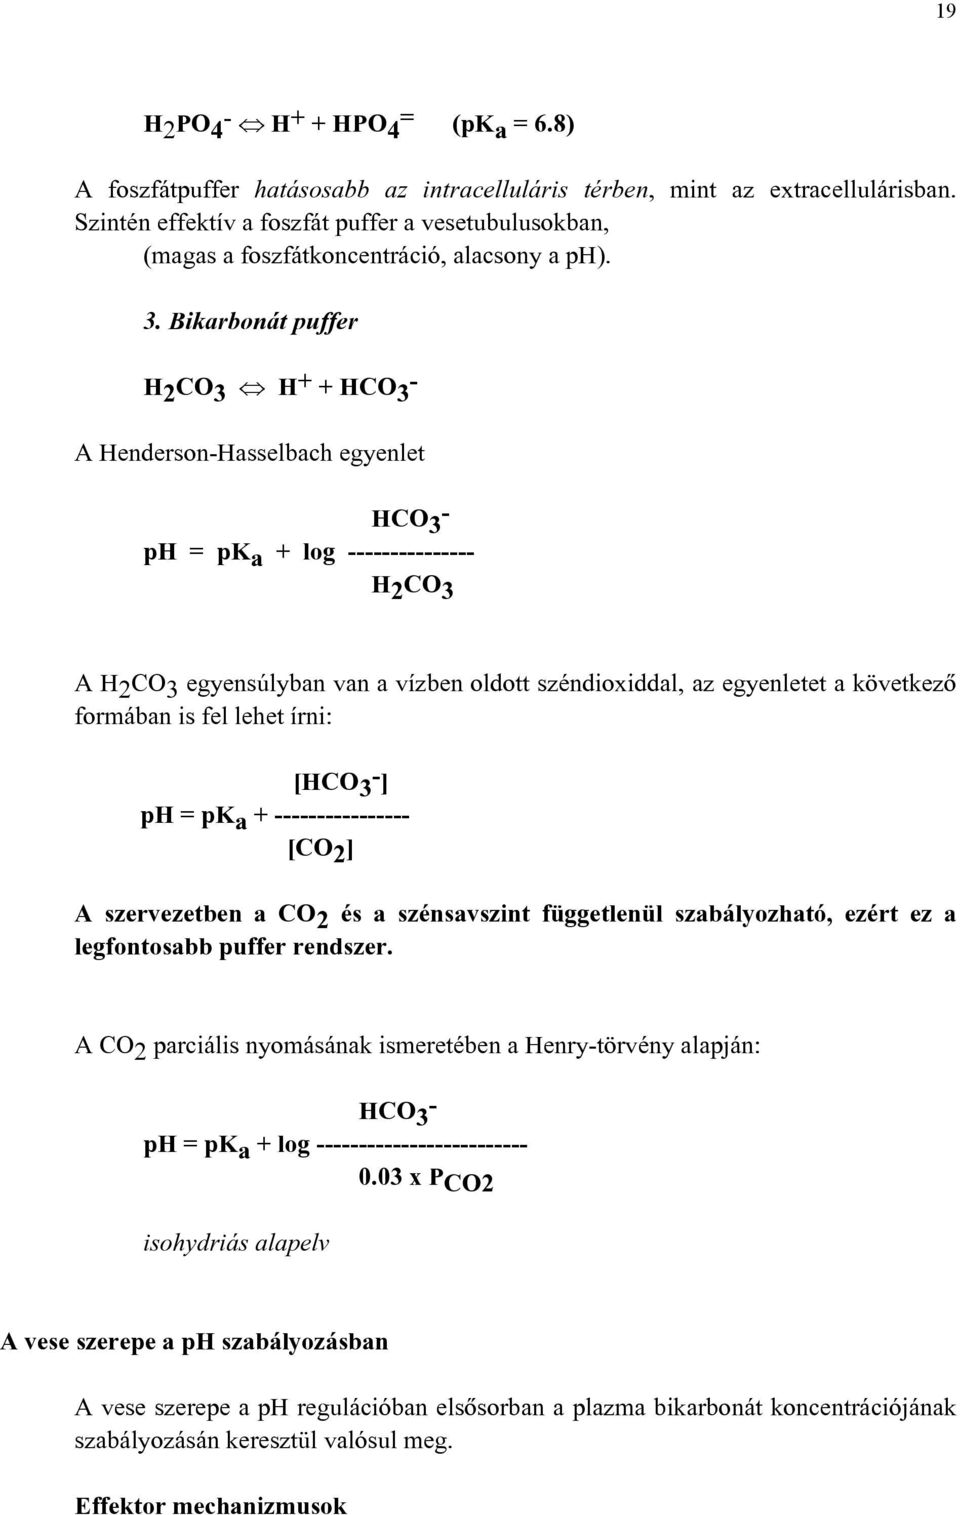 Bikarbonát puffer H 2 CO 3 H + + HCO 3 - A Henderson-Hasselbach egyenlet HCO 3 - ph = pk a + log --------------- H 2 CO 3 A H 2 CO 3 egyensúlyban van a vízben oldott széndioxiddal, az egyenletet a